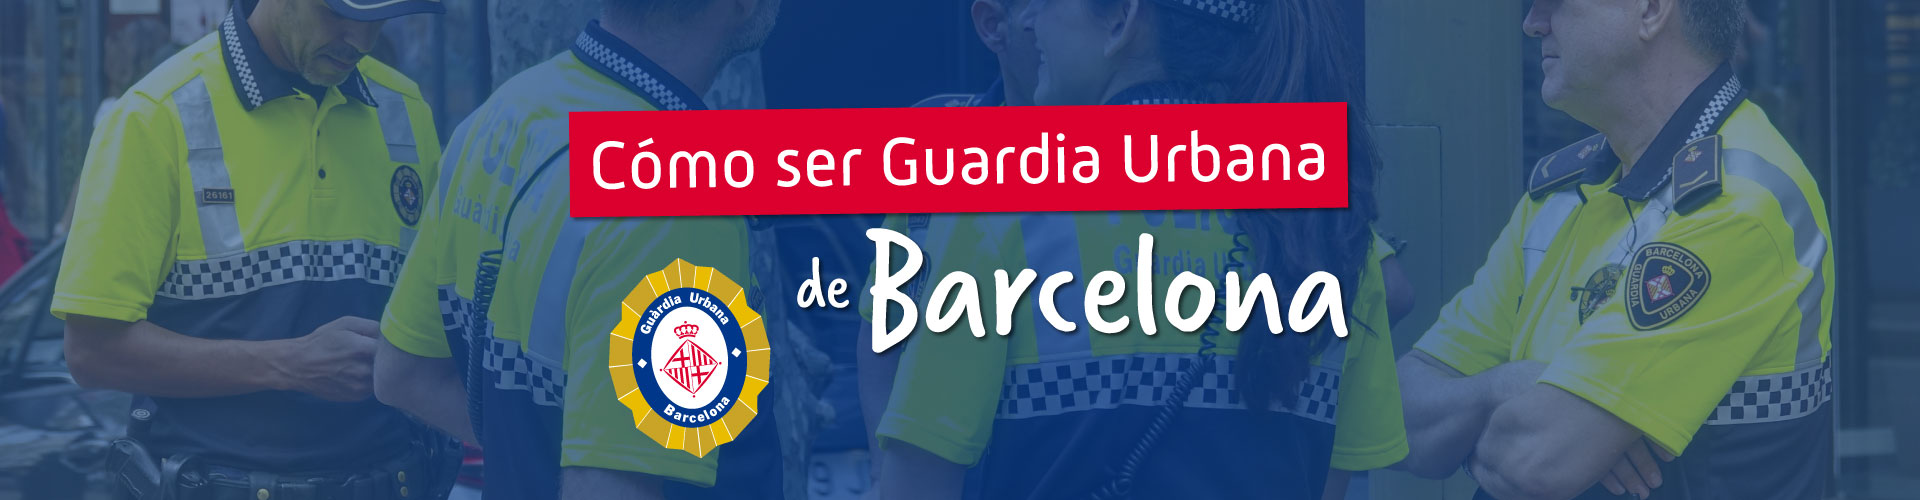 Cómo ser Guardia Urbana de Barcelona